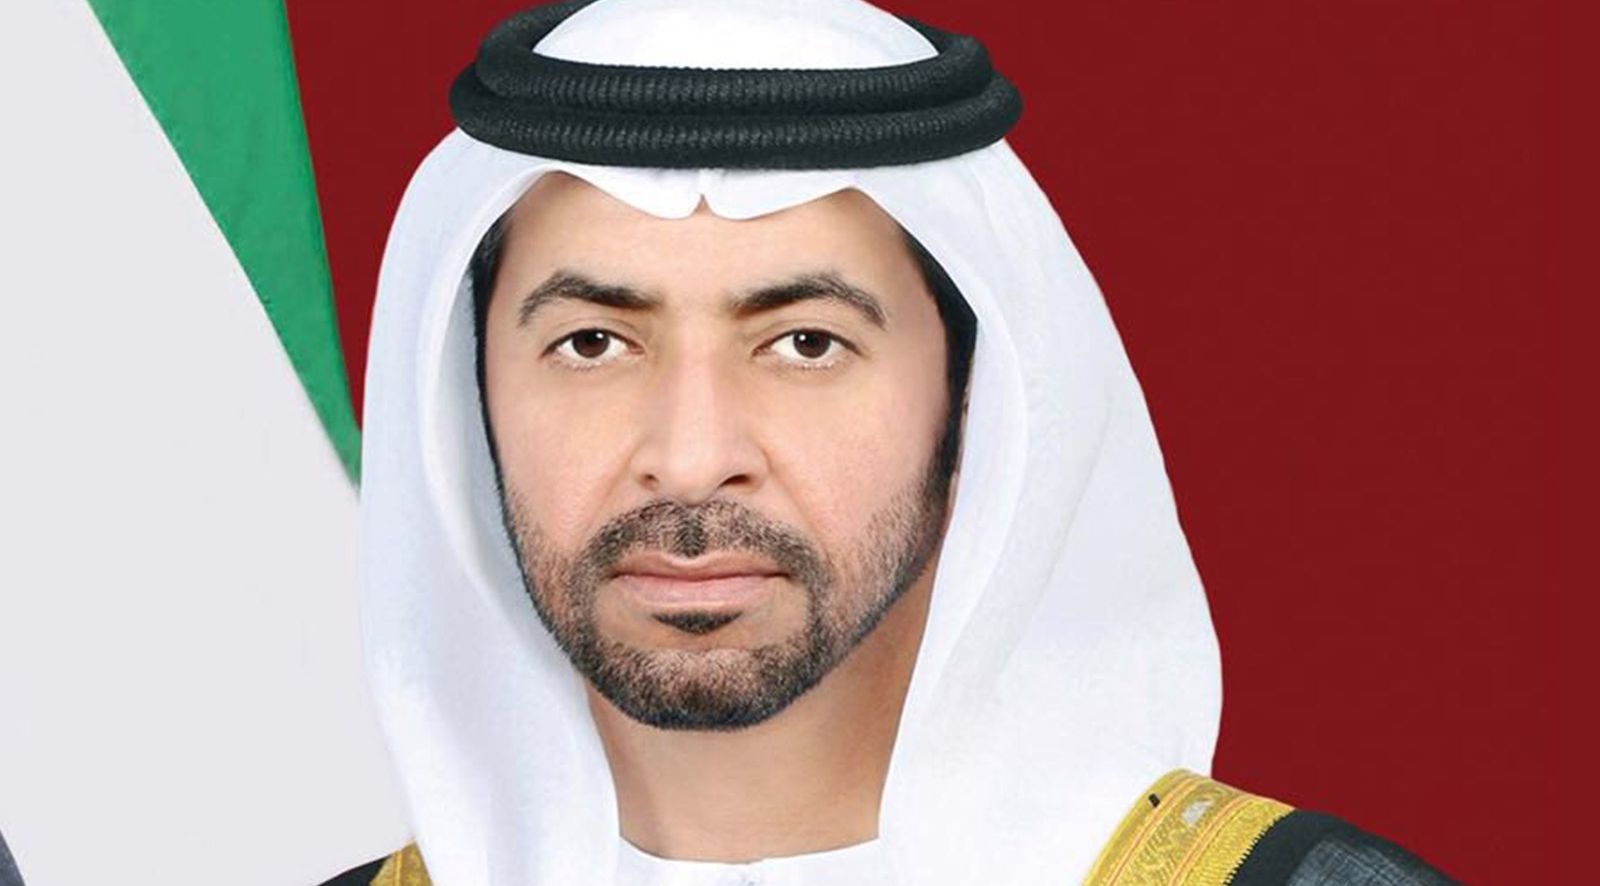 "دولة الإمارات تشيد بجهود أبنائها التطوعية في الحد من انتشار جائحة كورونا "